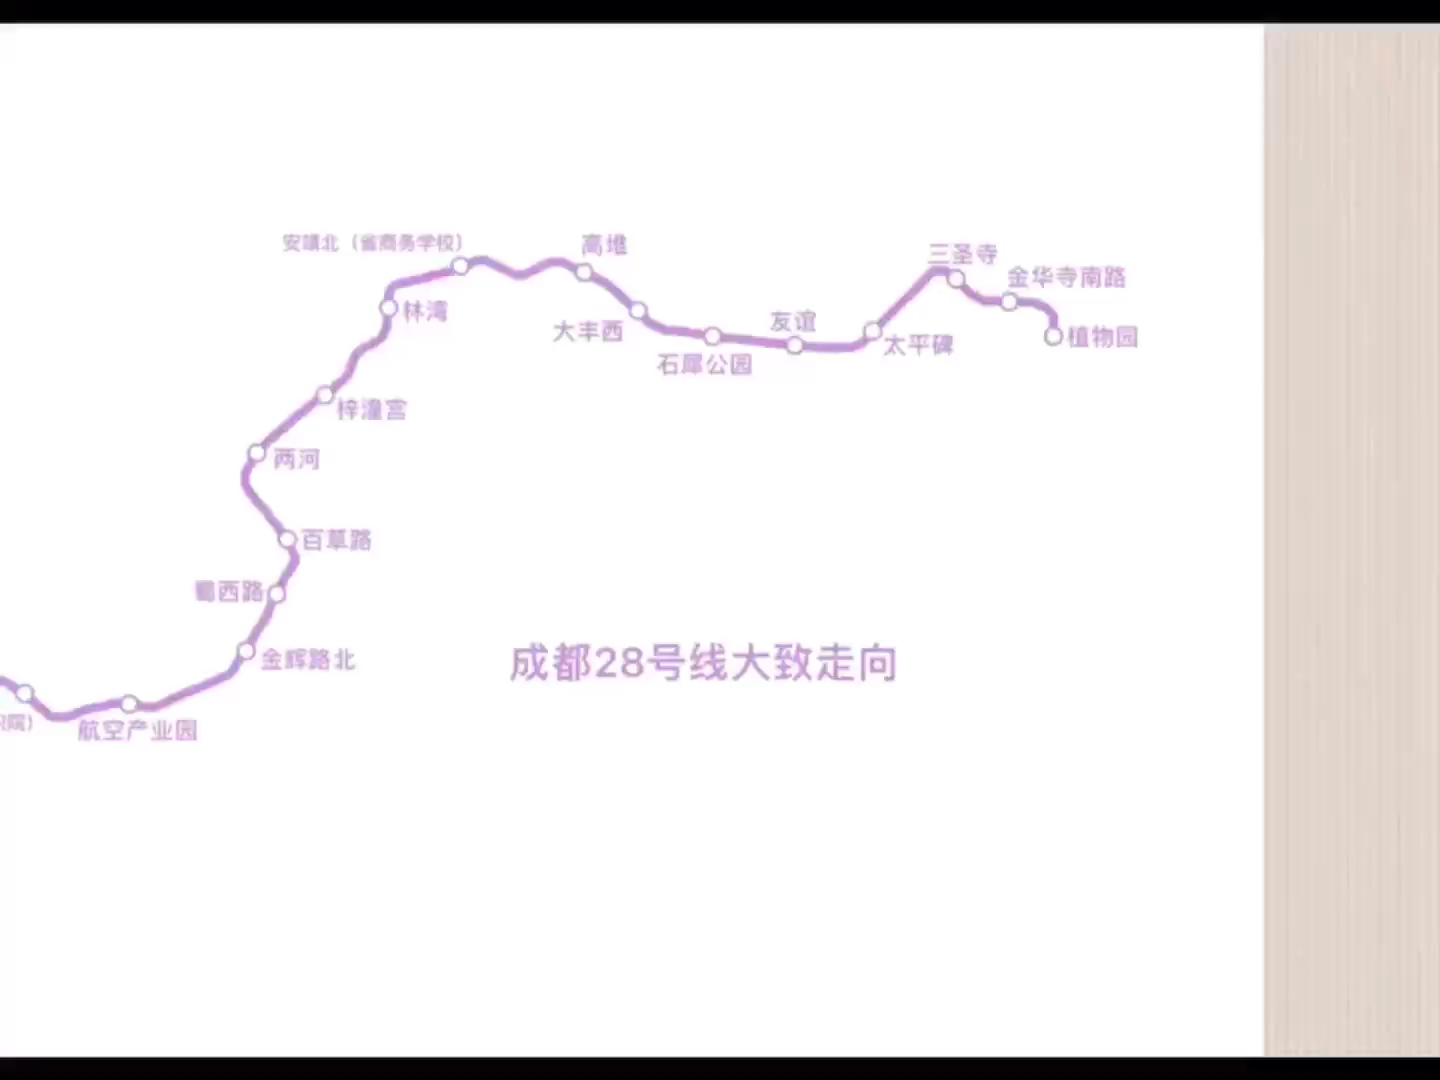 成都地铁28号线远期规划大概走向(中英双语)